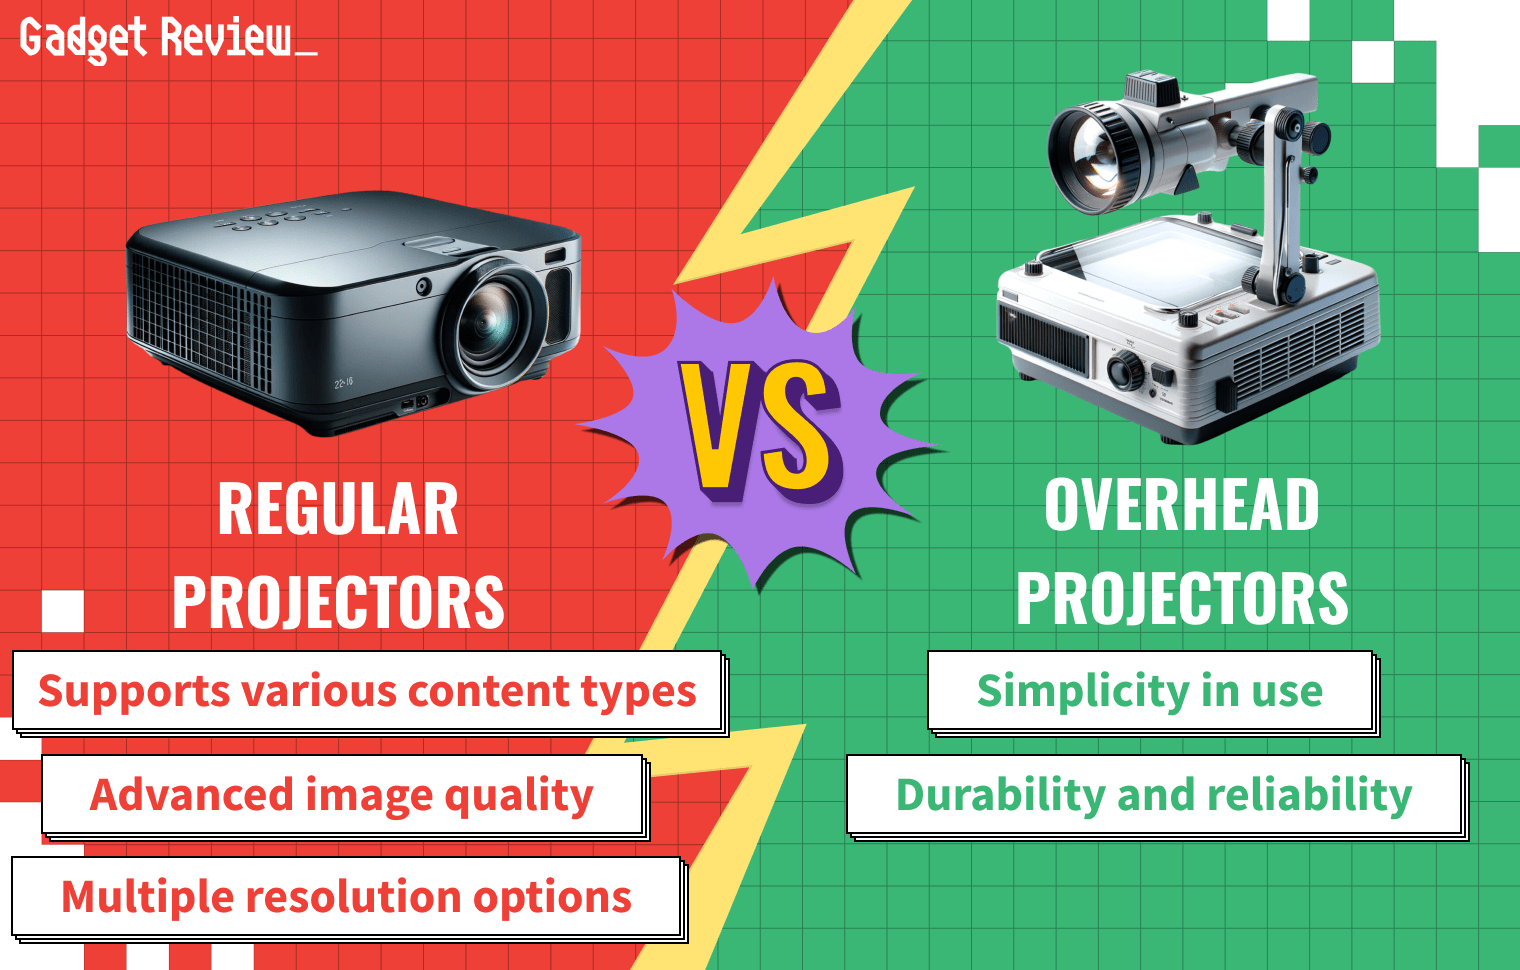 Video Projectors vs Overhead Projectors